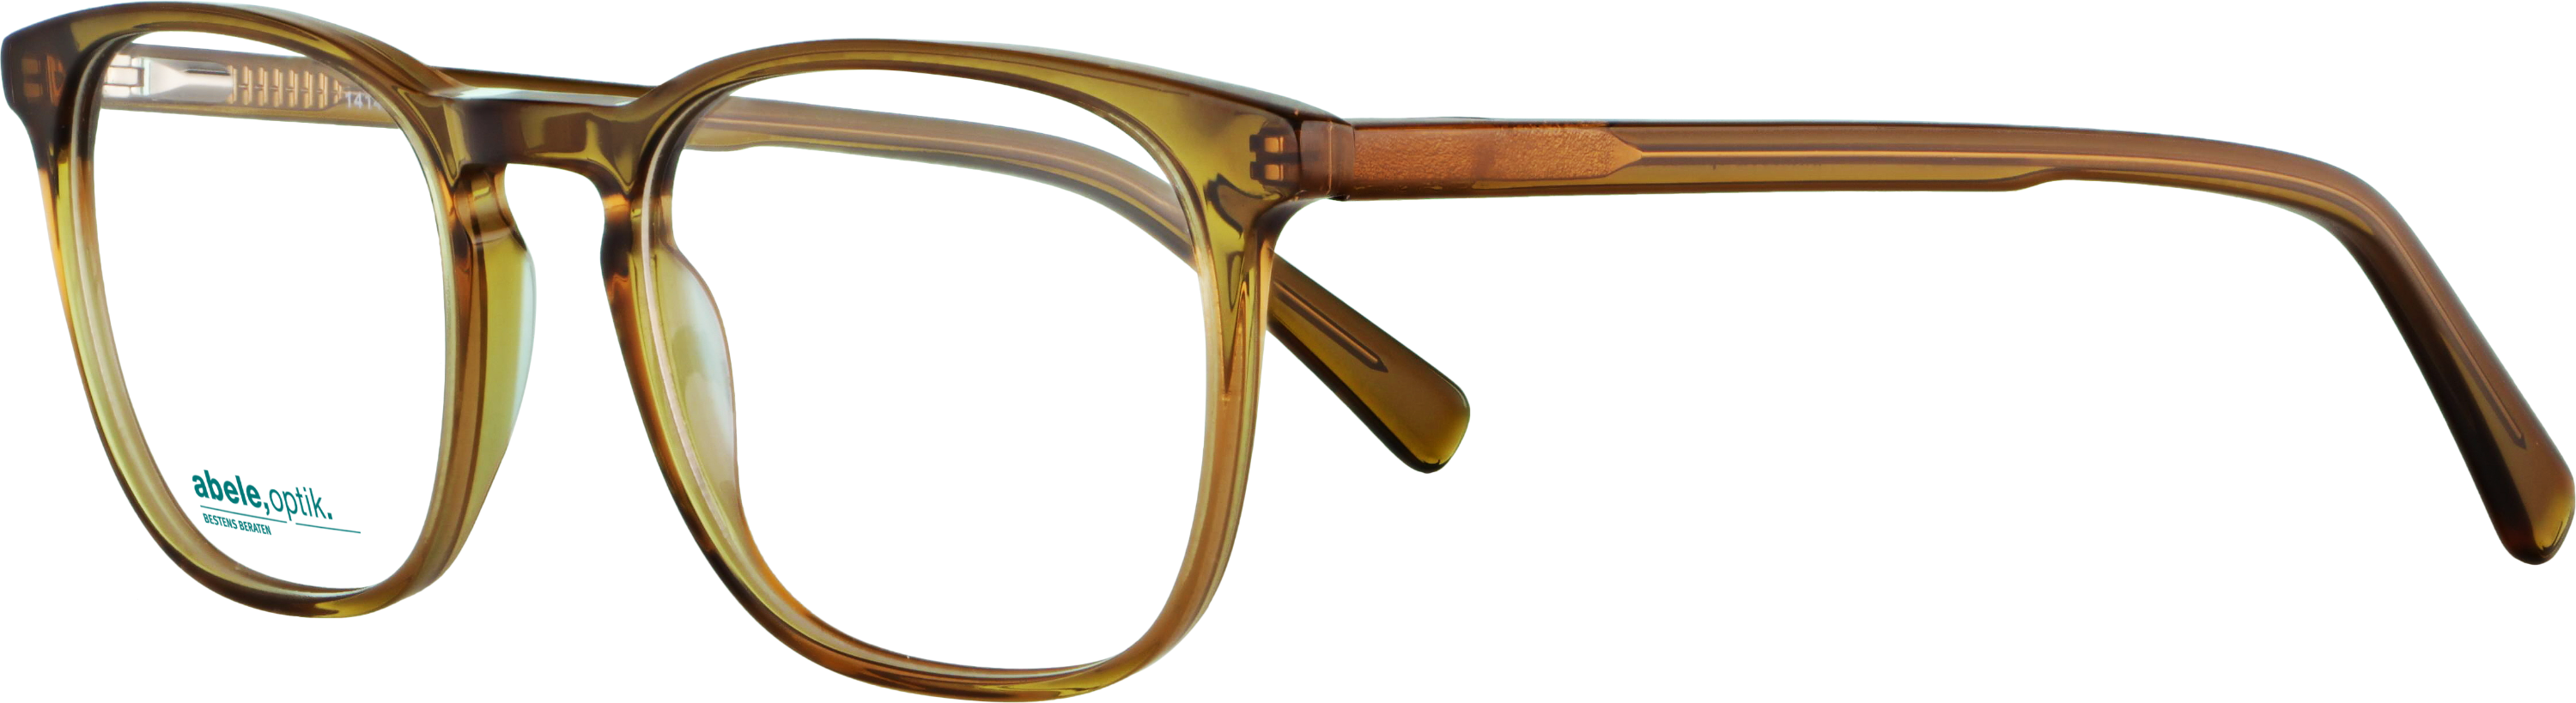 Das Bild zeigt die Korrektionsbrille 141431 von der Marke Abele Optik in braun.